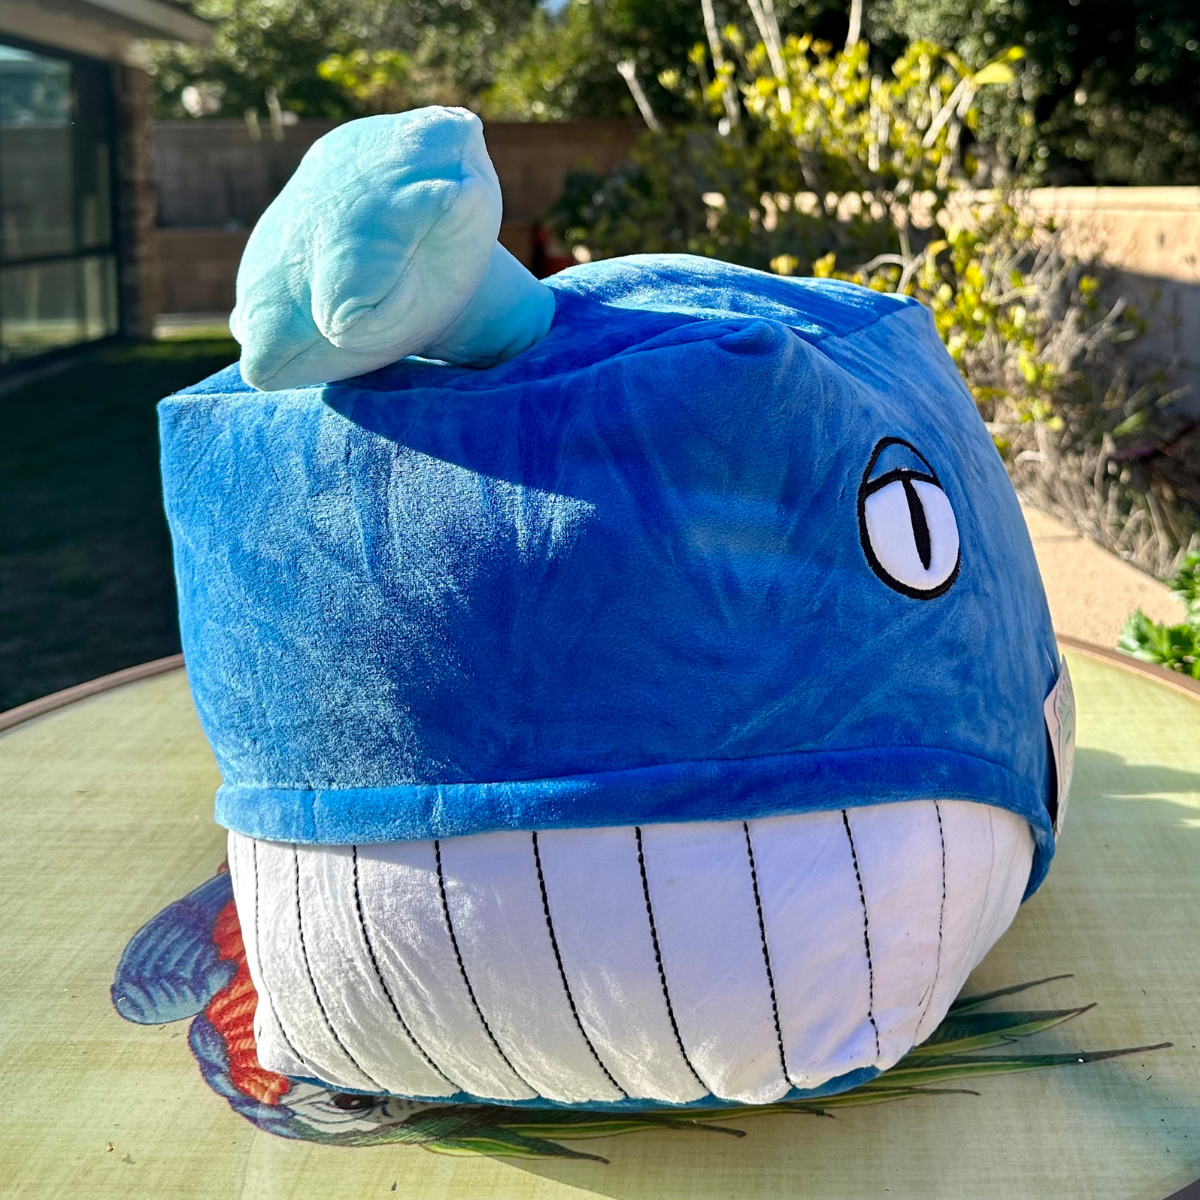 Alan: Whale Plush Pillow, Blue, 15 Inches - MorisMos Plush Toys On Sale